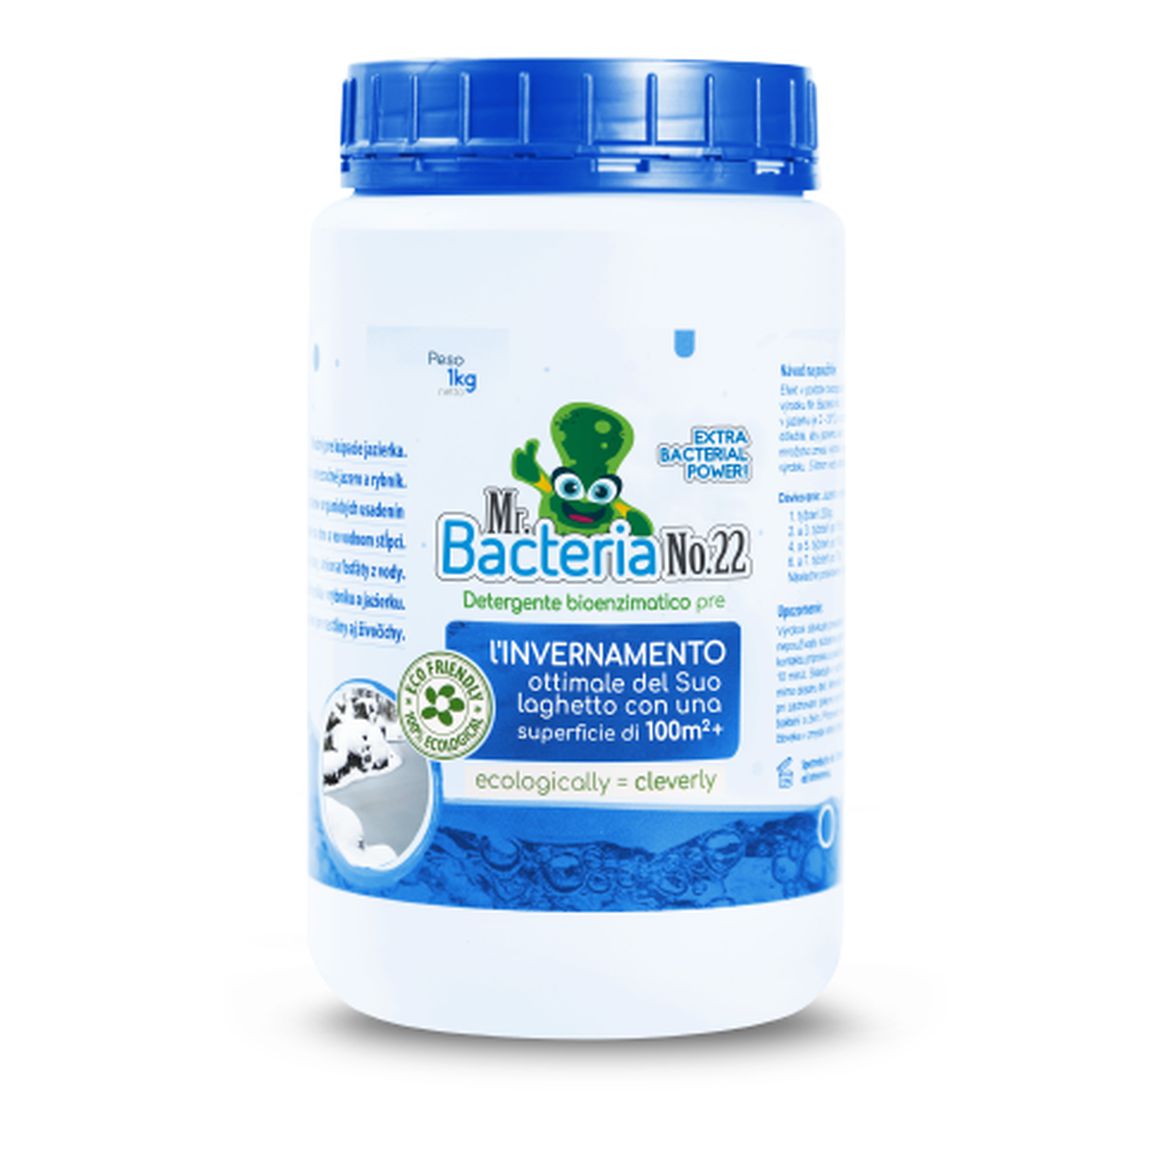 Mr. Bacteria No.22 Detergente bio-enzimatico per l'INVERNAMENTO ottimale